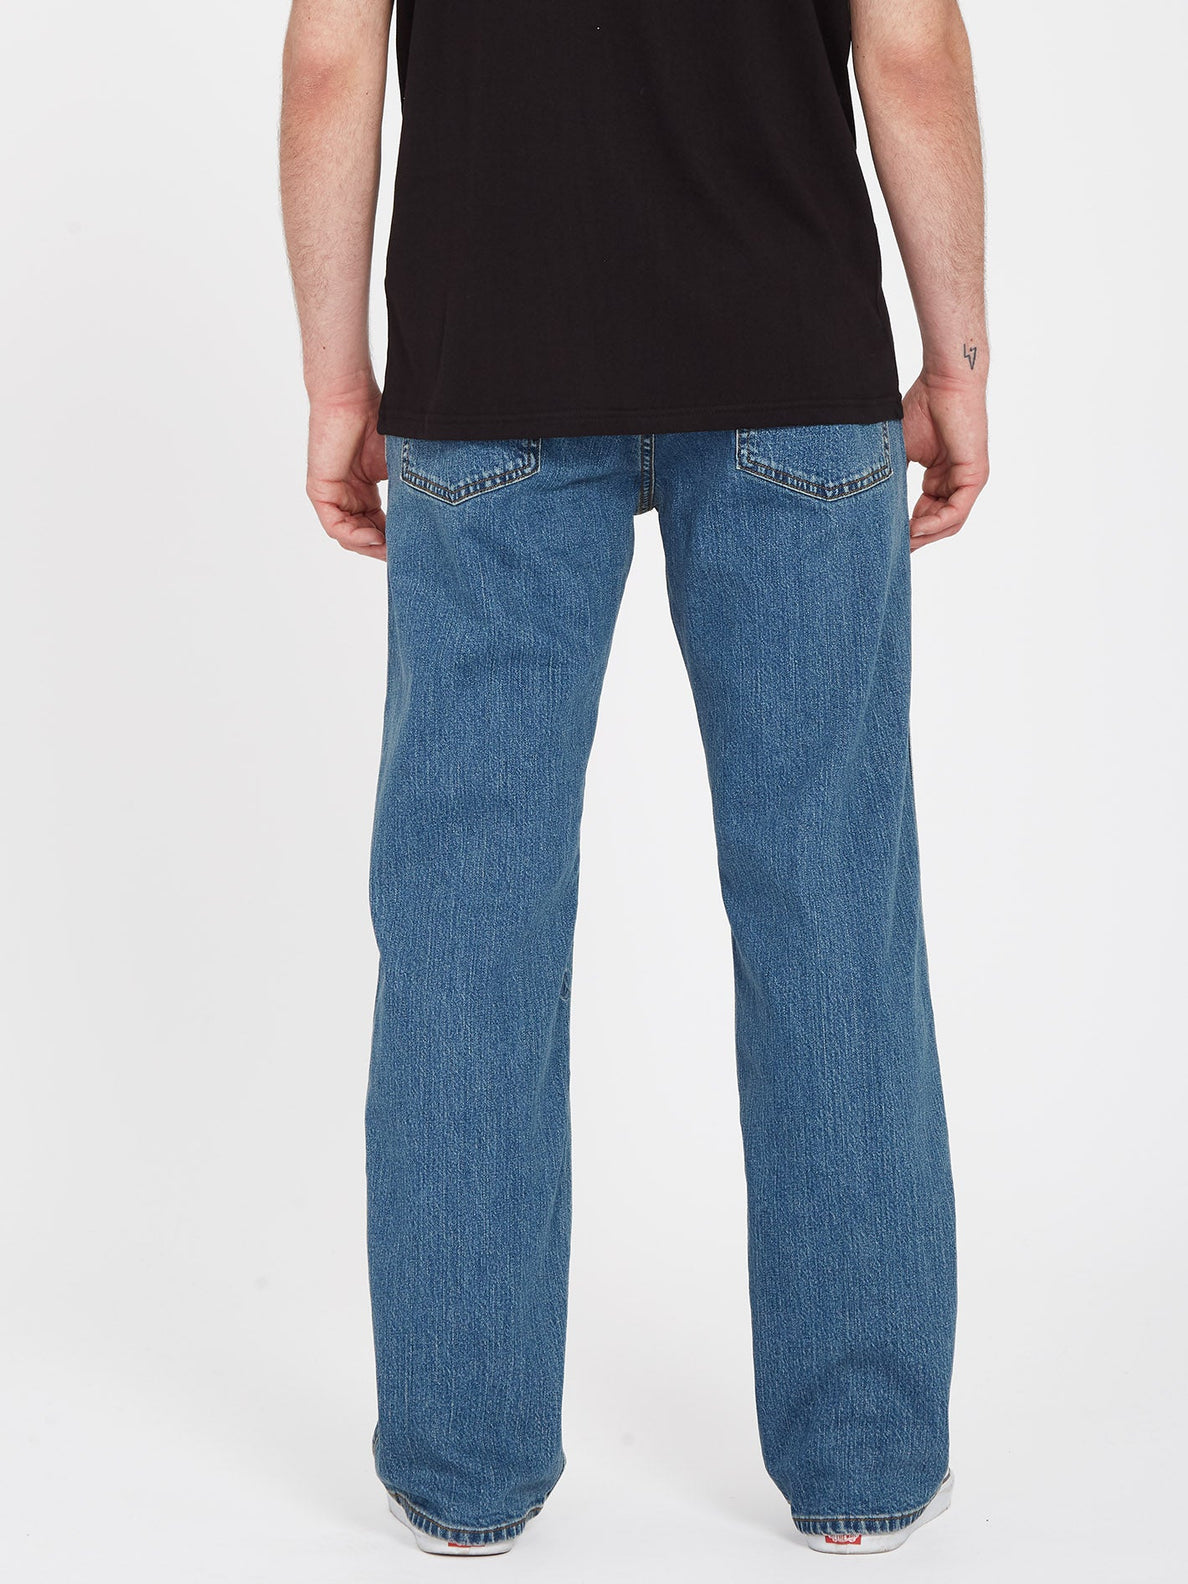 Modown Jeans - AGED INDIGO (A1931900_AIN) [B]